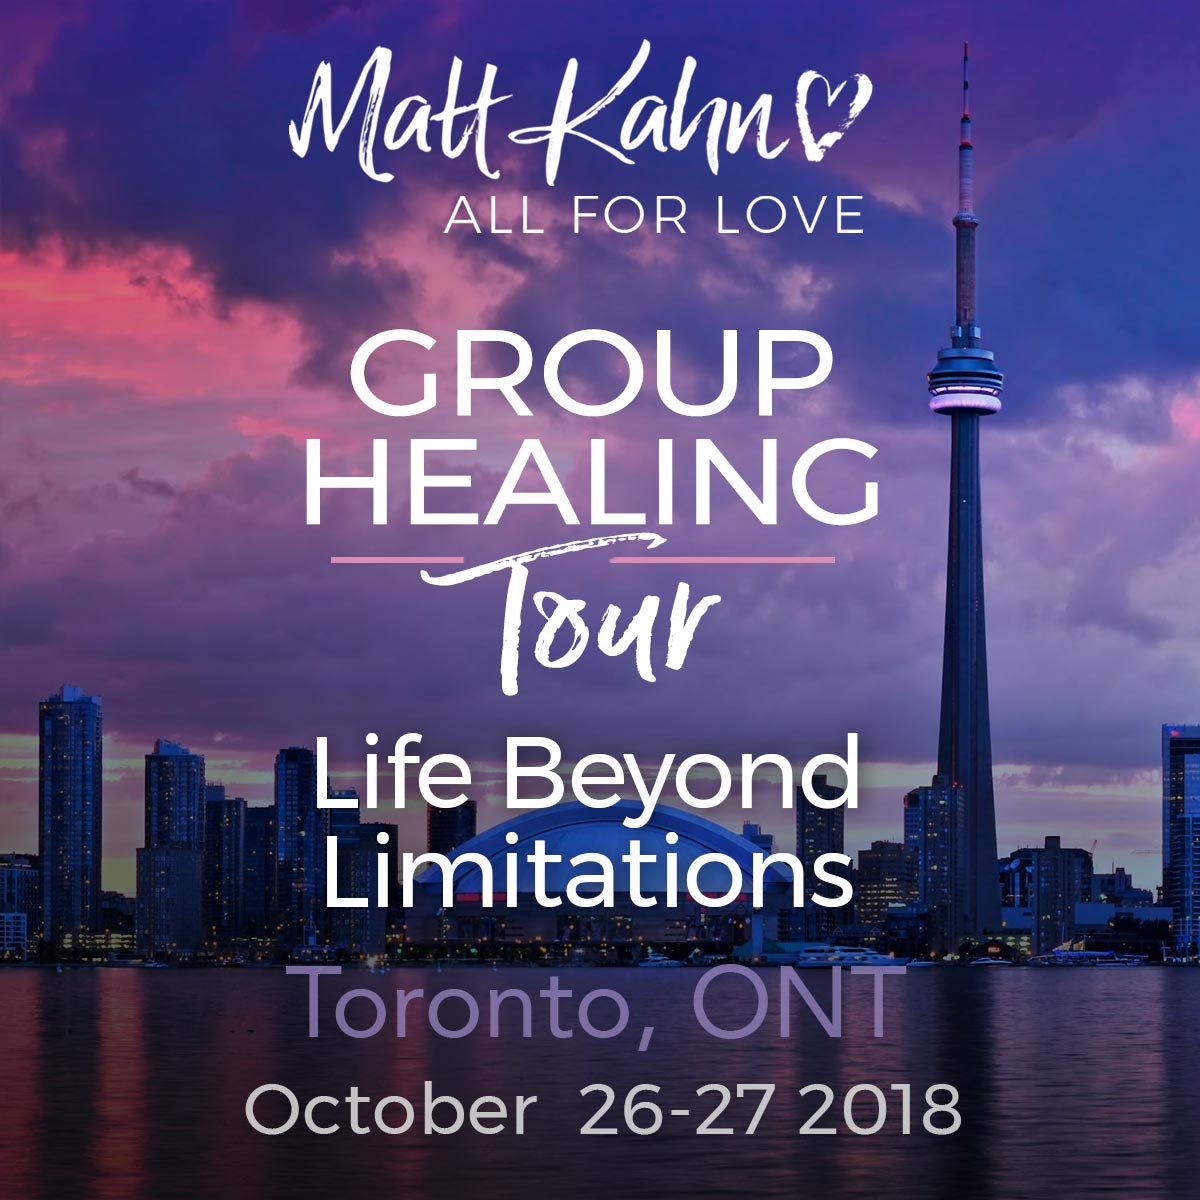 Group Healing Tour Toronto, Ontario